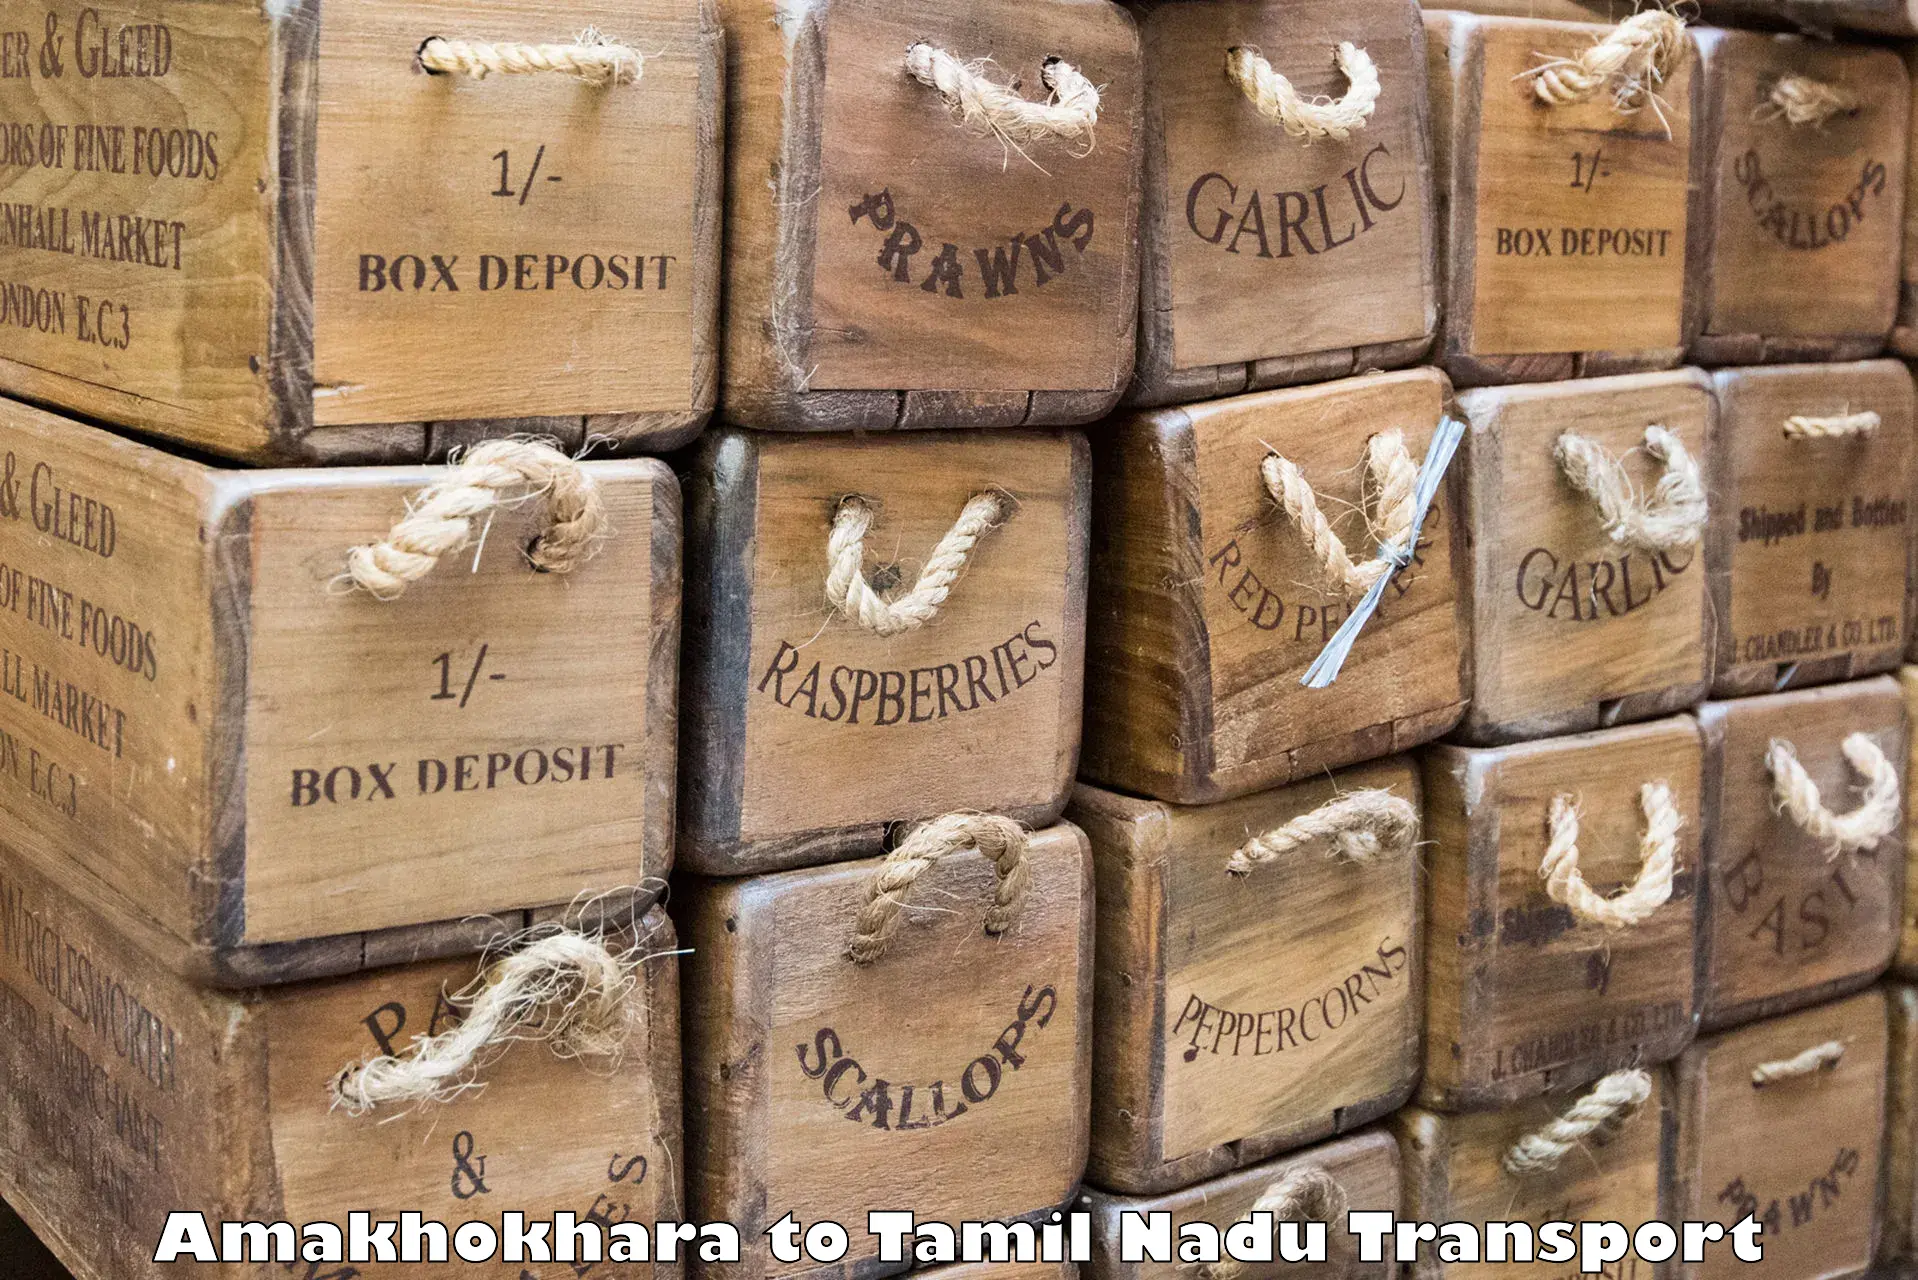 Daily parcel service transport Amakhokhara to Eraiyur